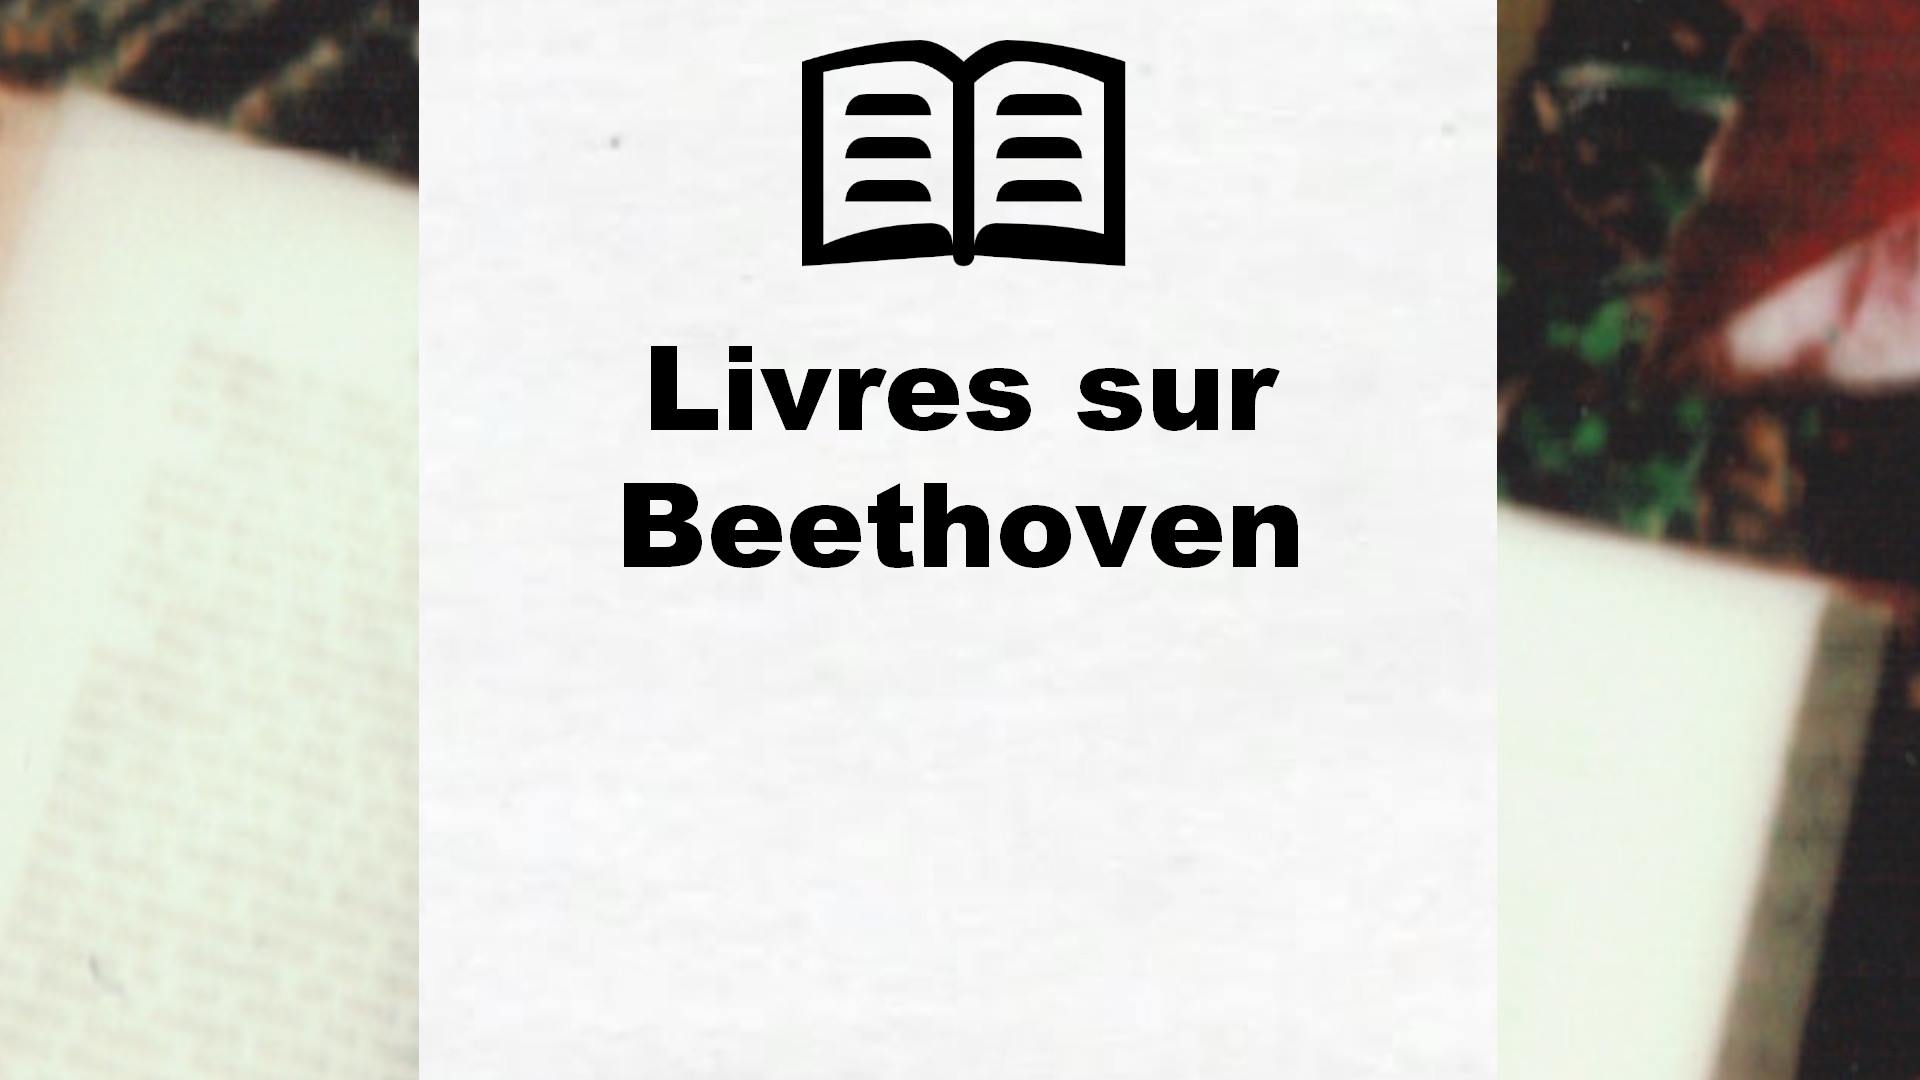 Livres sur Beethoven